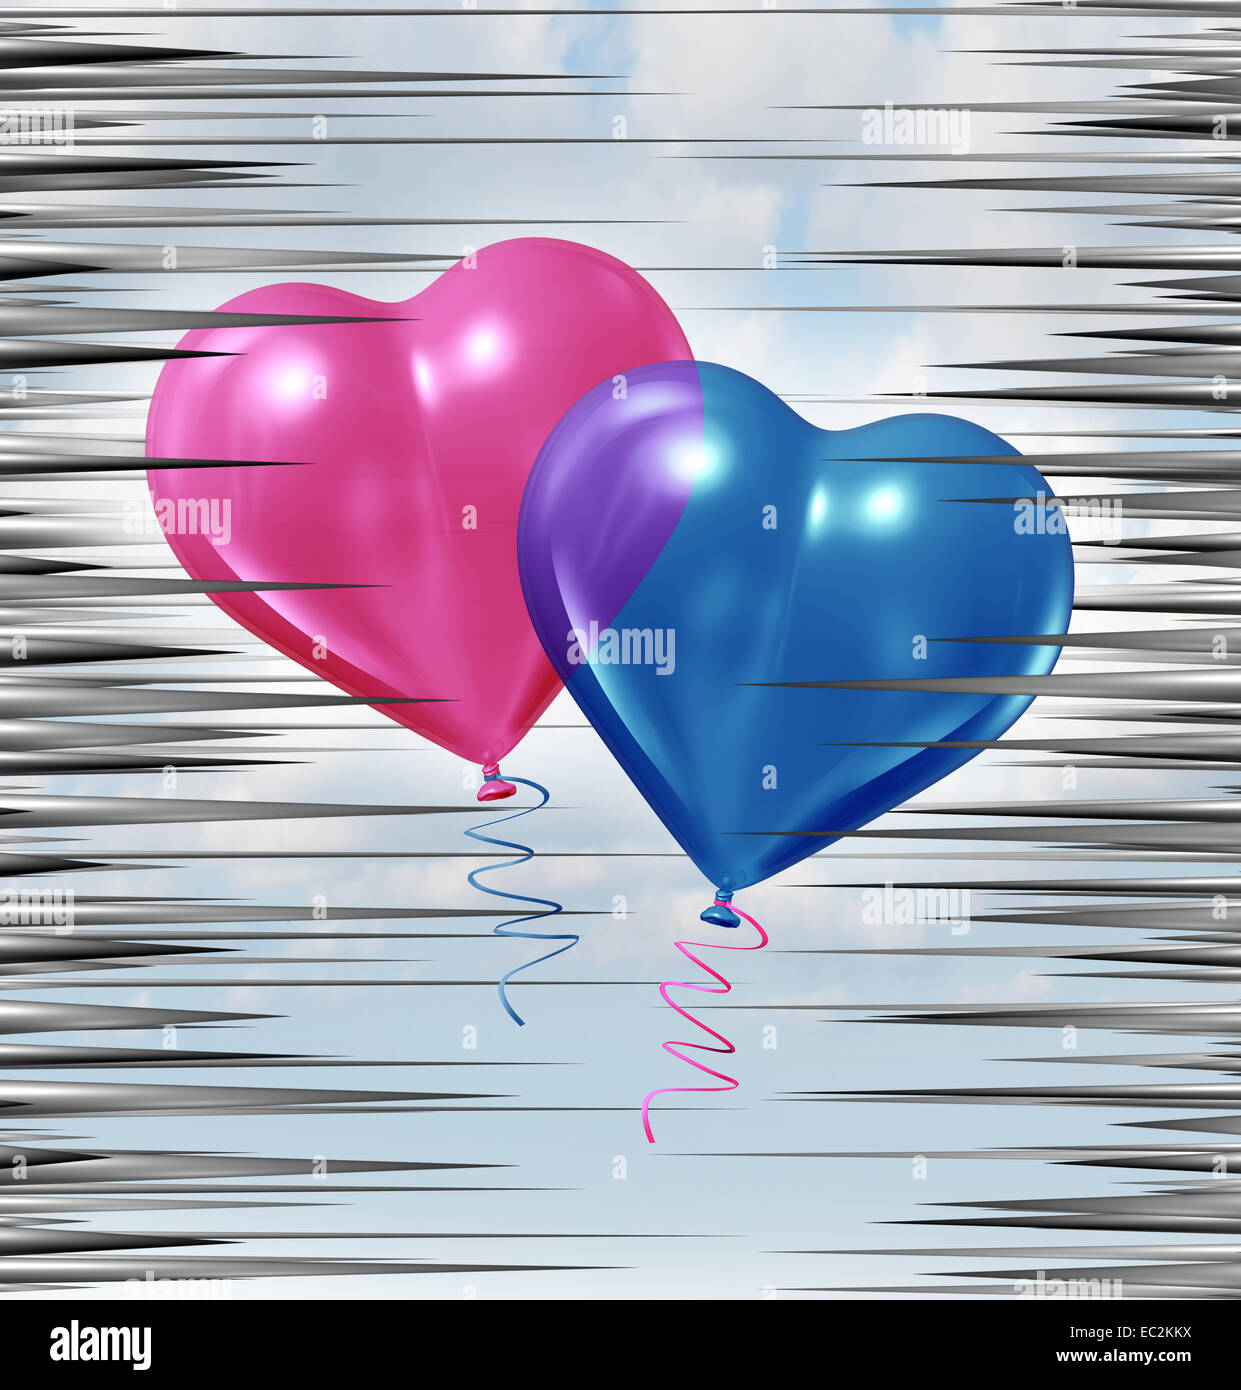 Relación crisis y problemas de pareja como un globo azul y rosa con forma de corazón flotando a través de un grupo de agujas afiladas como el amor y el romance, metáfora de la vida la asociación problemas. Foto de stock